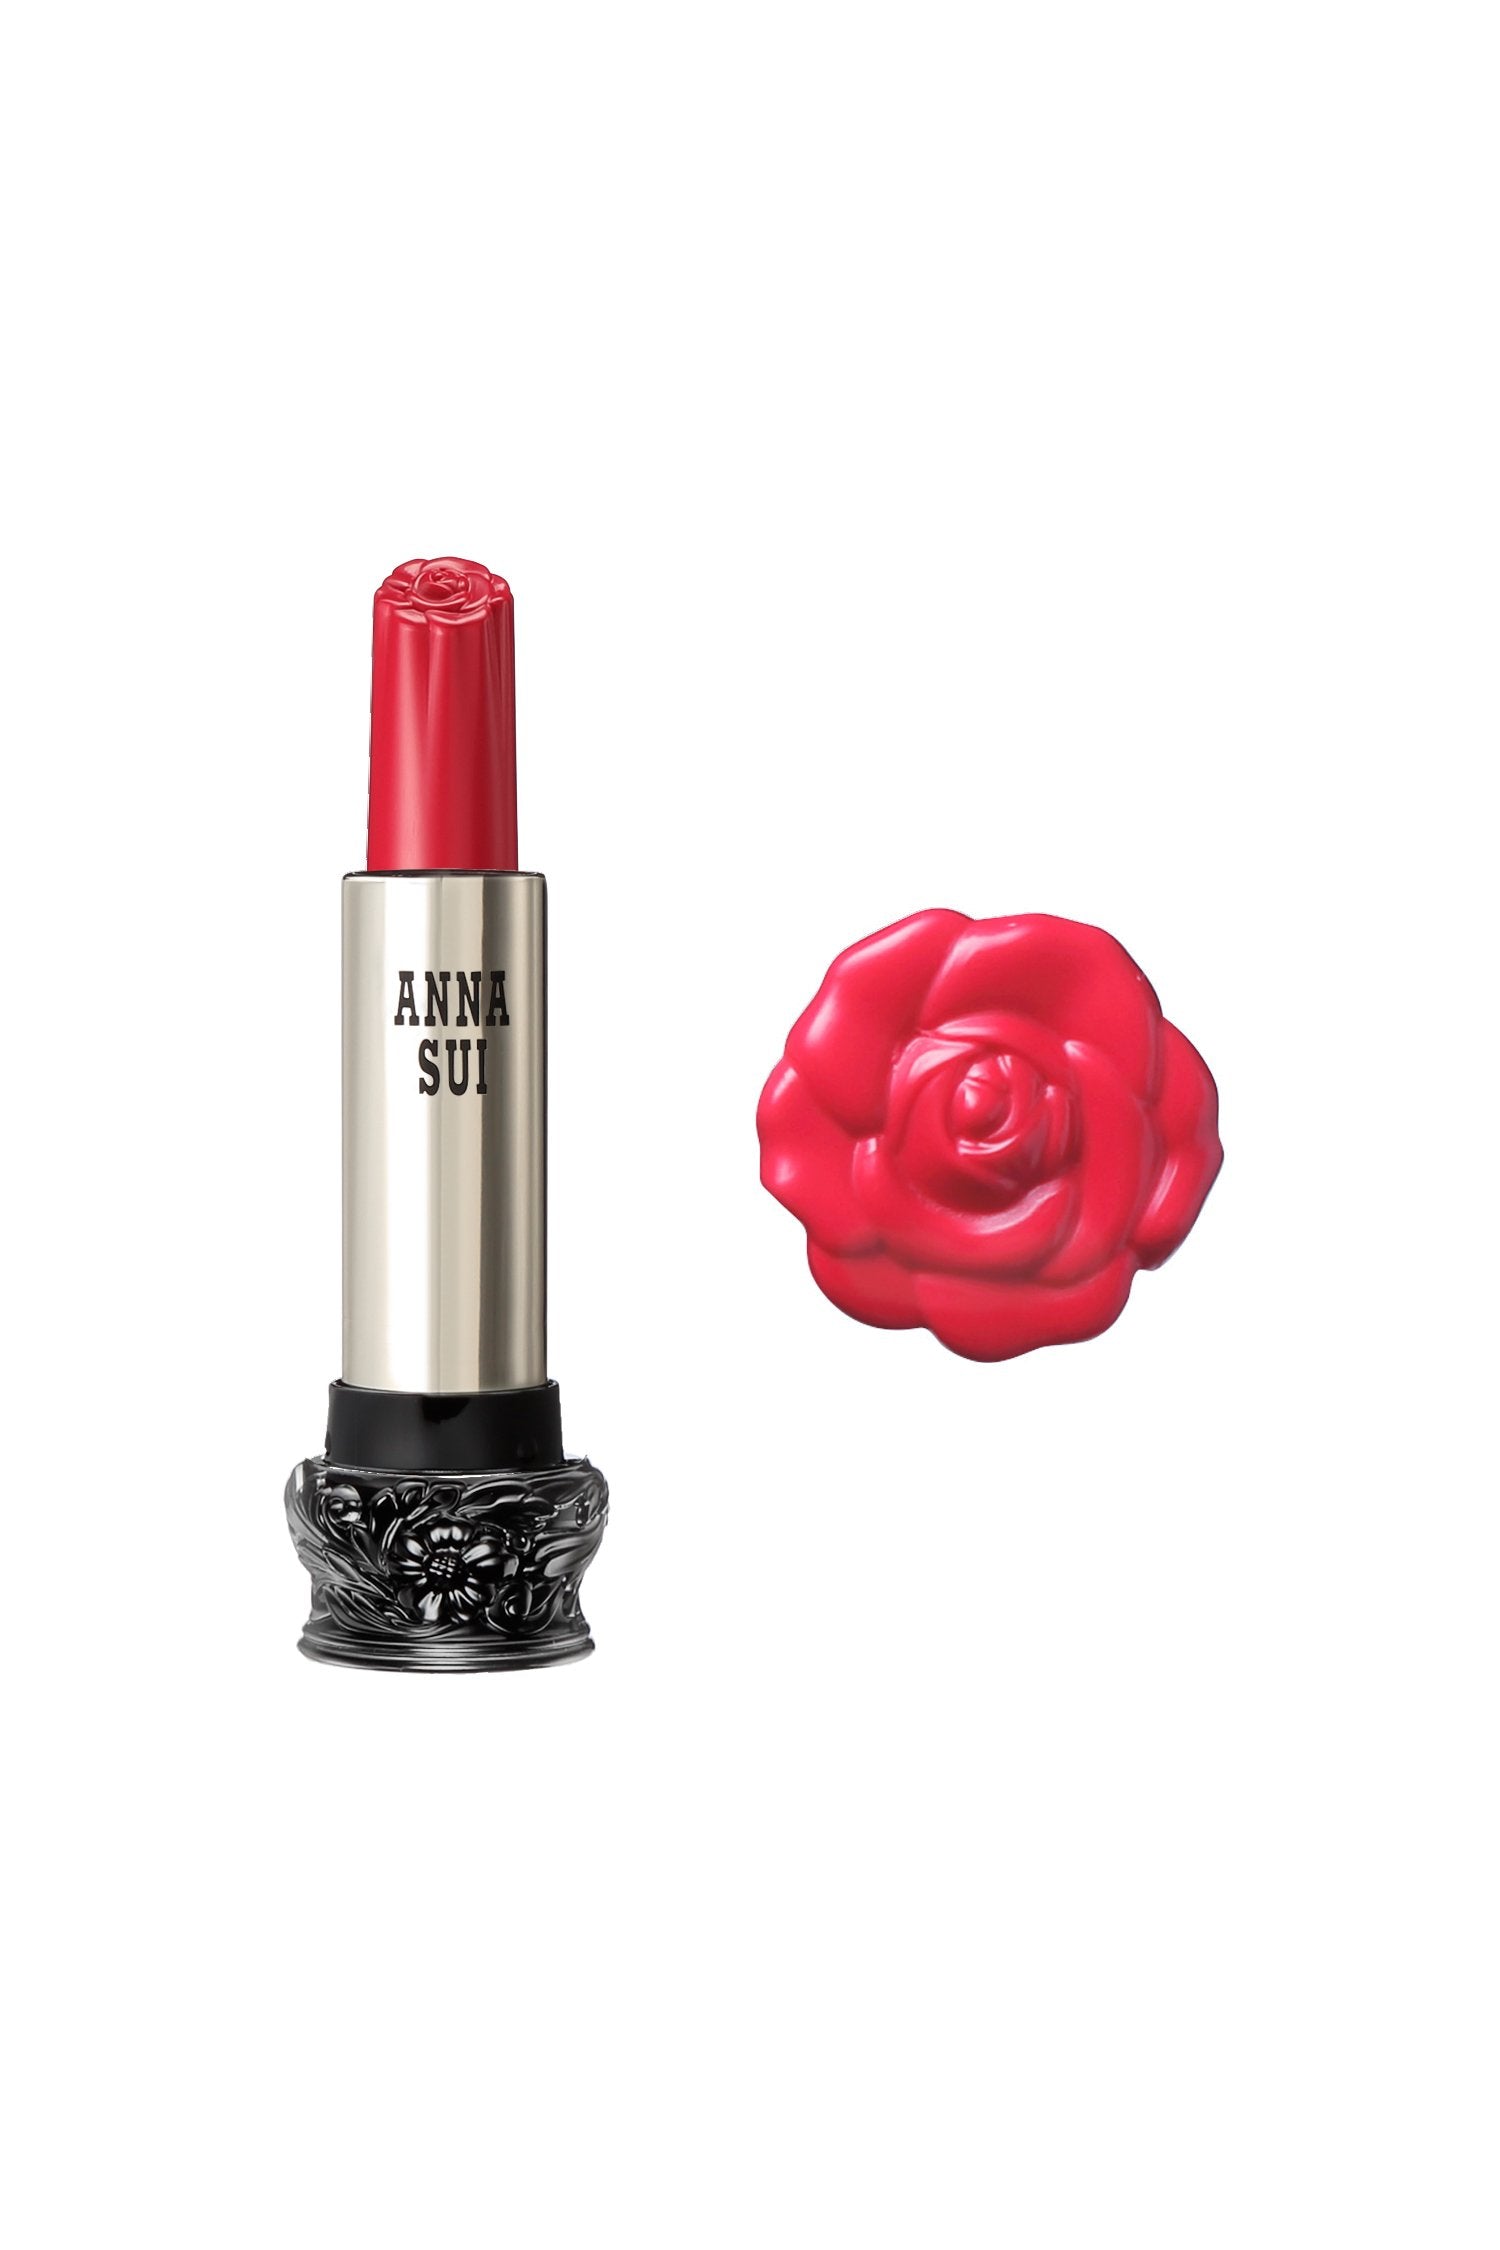 304 - Rossetto Camelia rosa rossa F: Fairy Flower, in contenitore cilindrico, base nera grande, disegno floreale inciso, corpo metallico